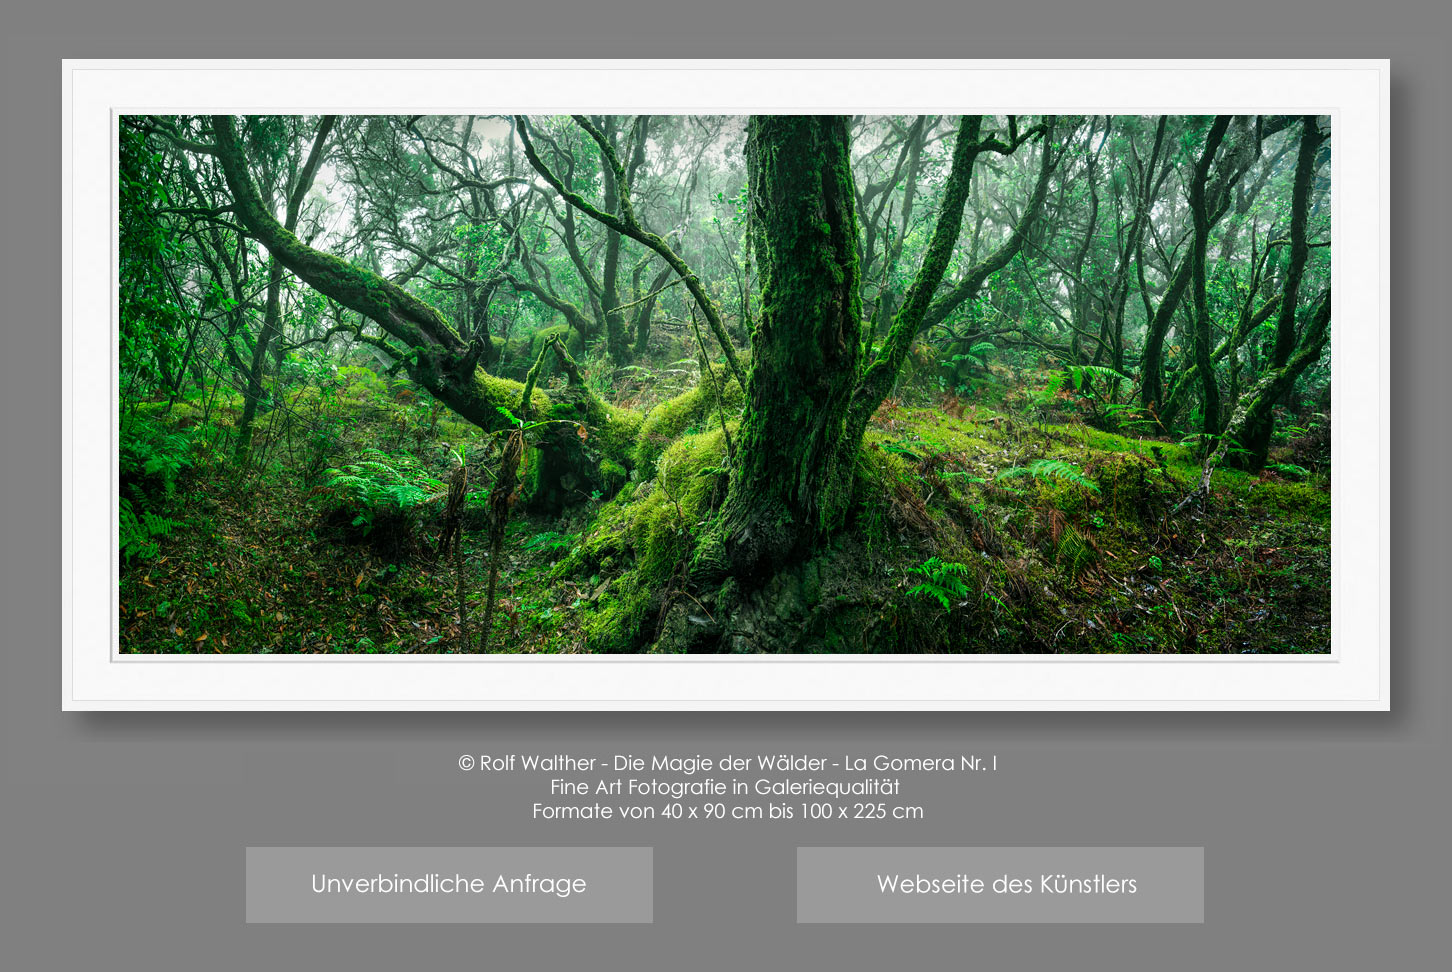 Fine Art Fotografie - La Gomera - Magie der Wälder